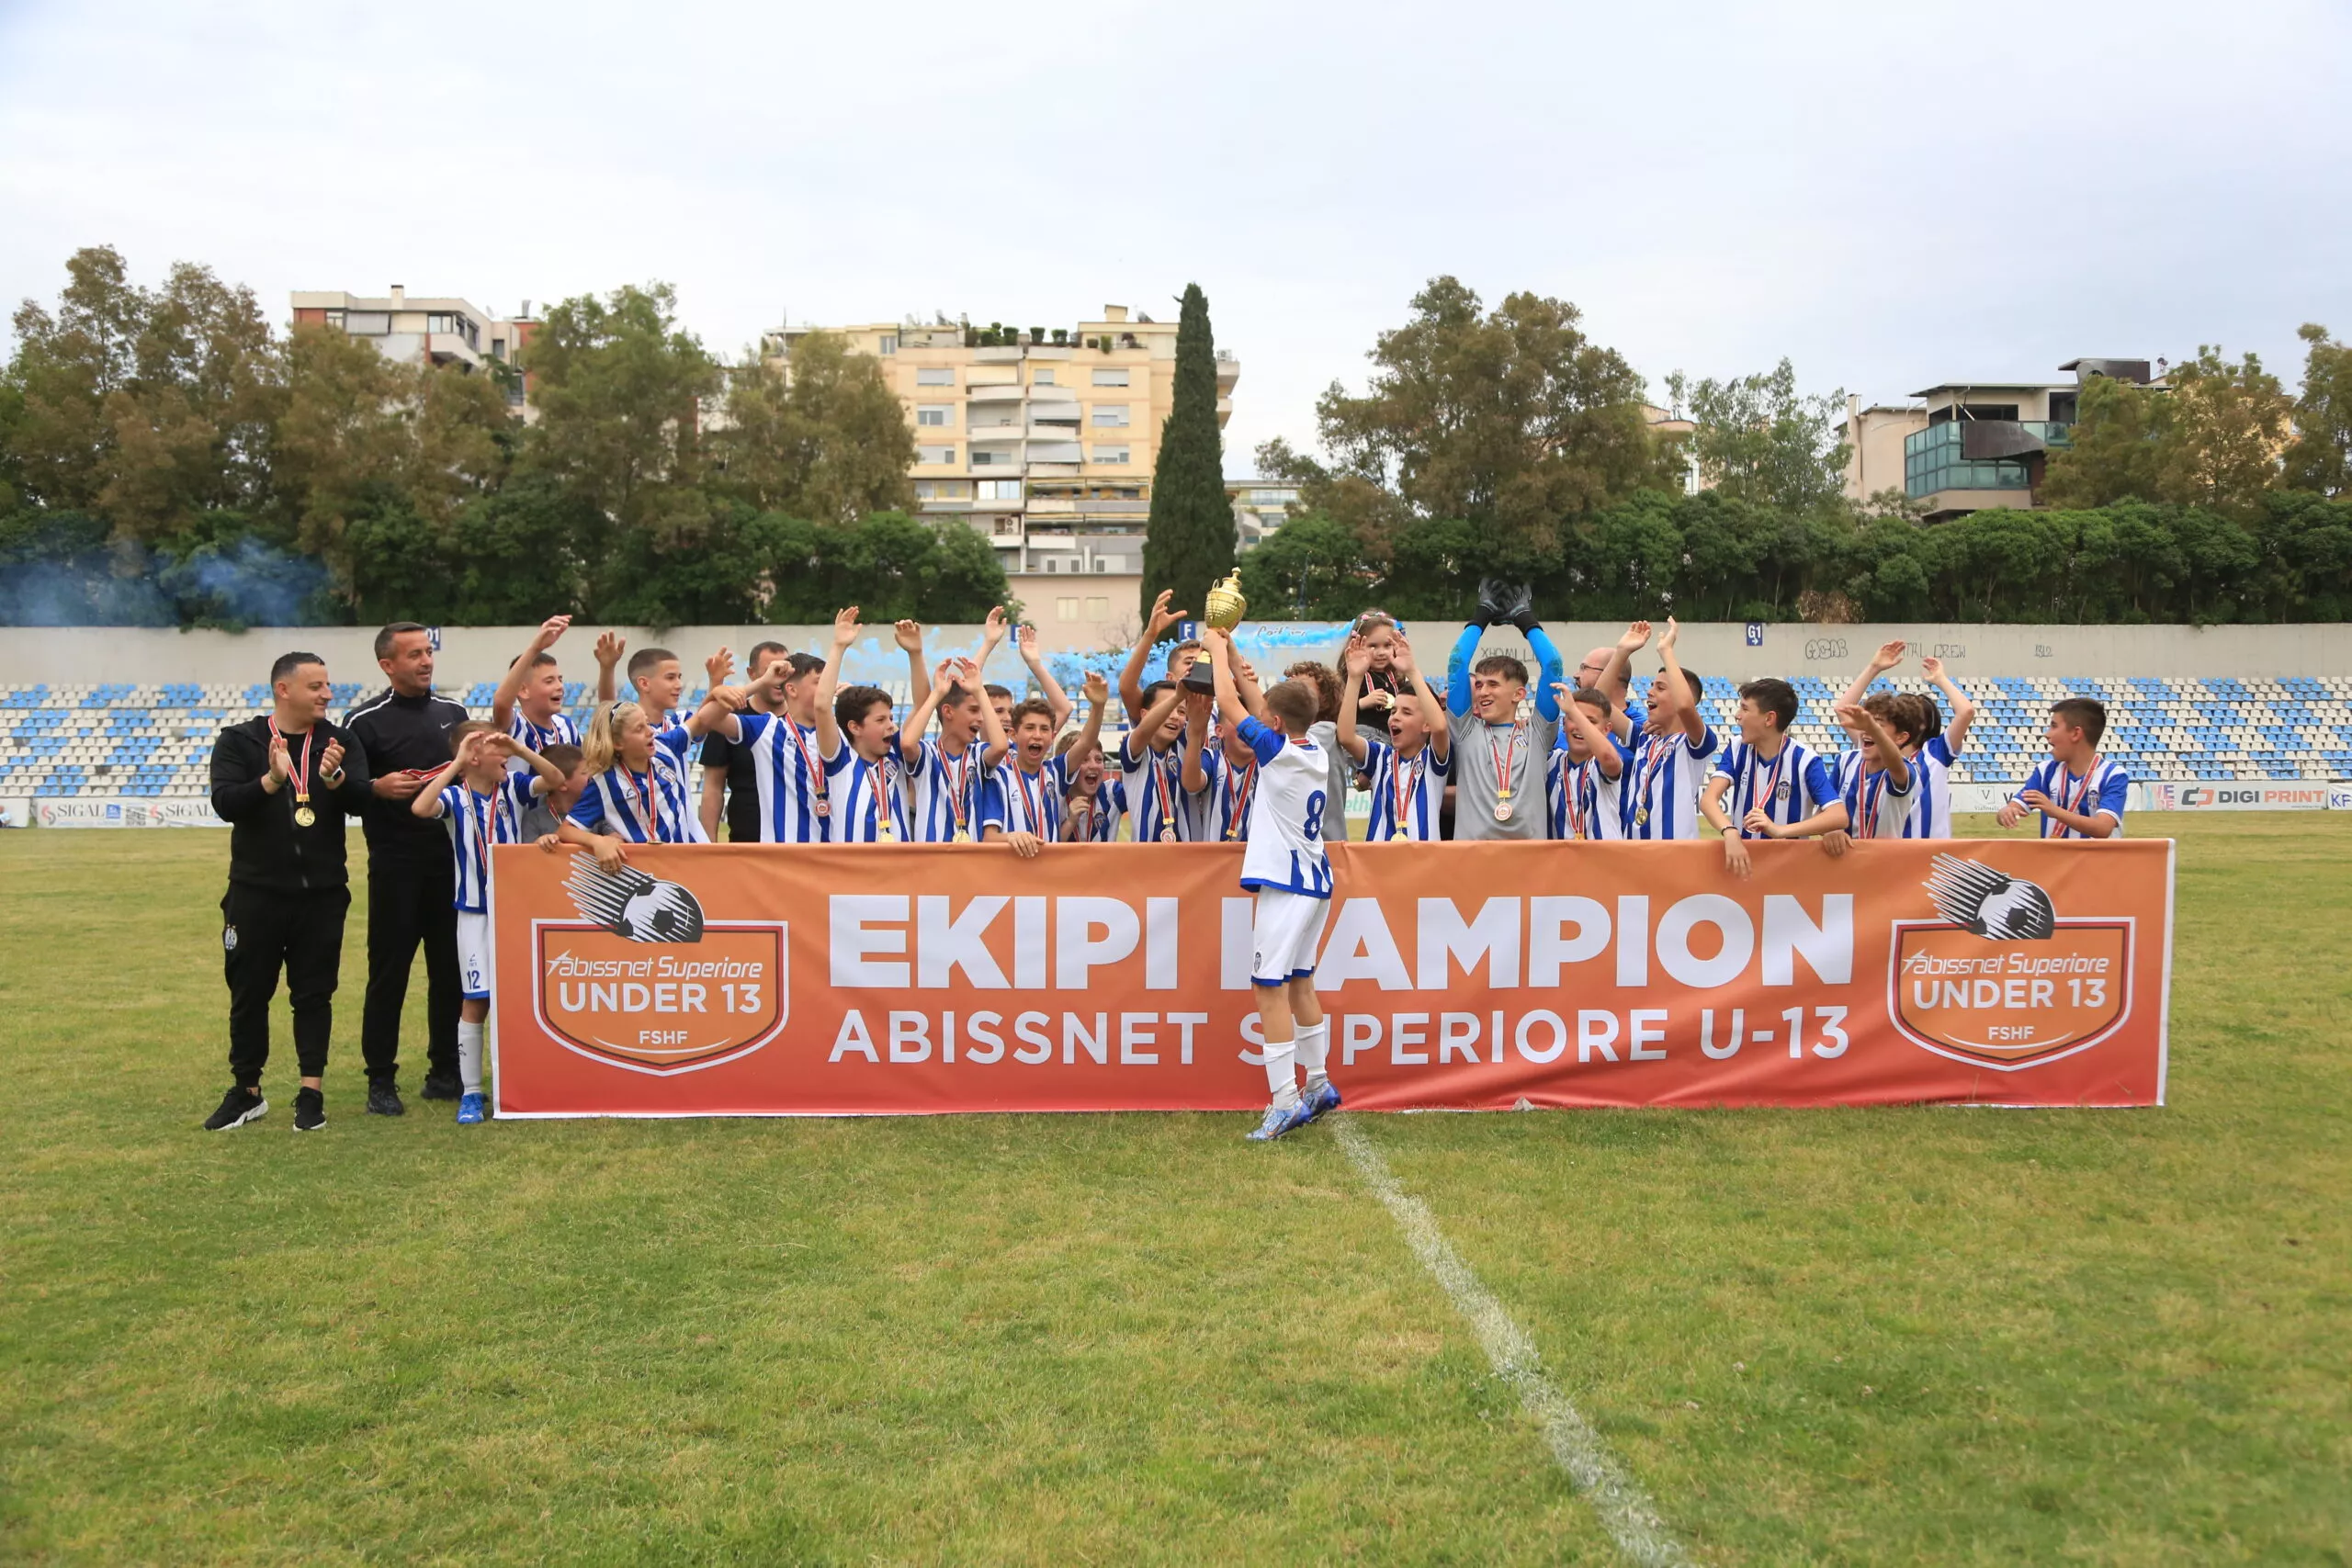 Kampionati i moshave/ Tirana U-13 shpallet kampion i ‘Abissnet Superiore’